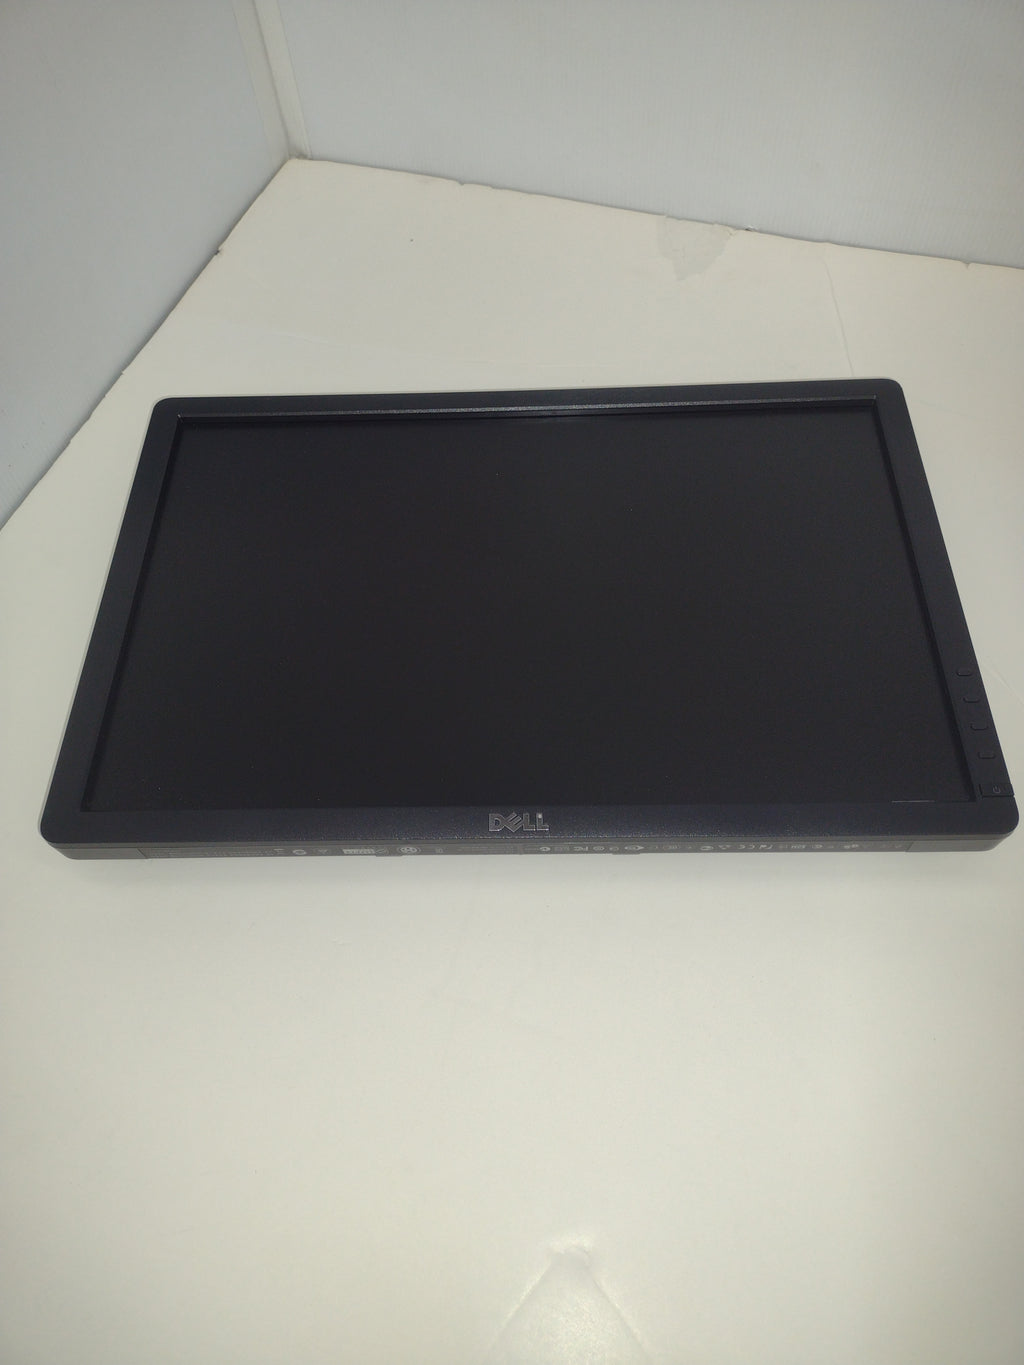 DELL E1913c 19" 1440 x 900 16:10 LCD Monitor (no stand)